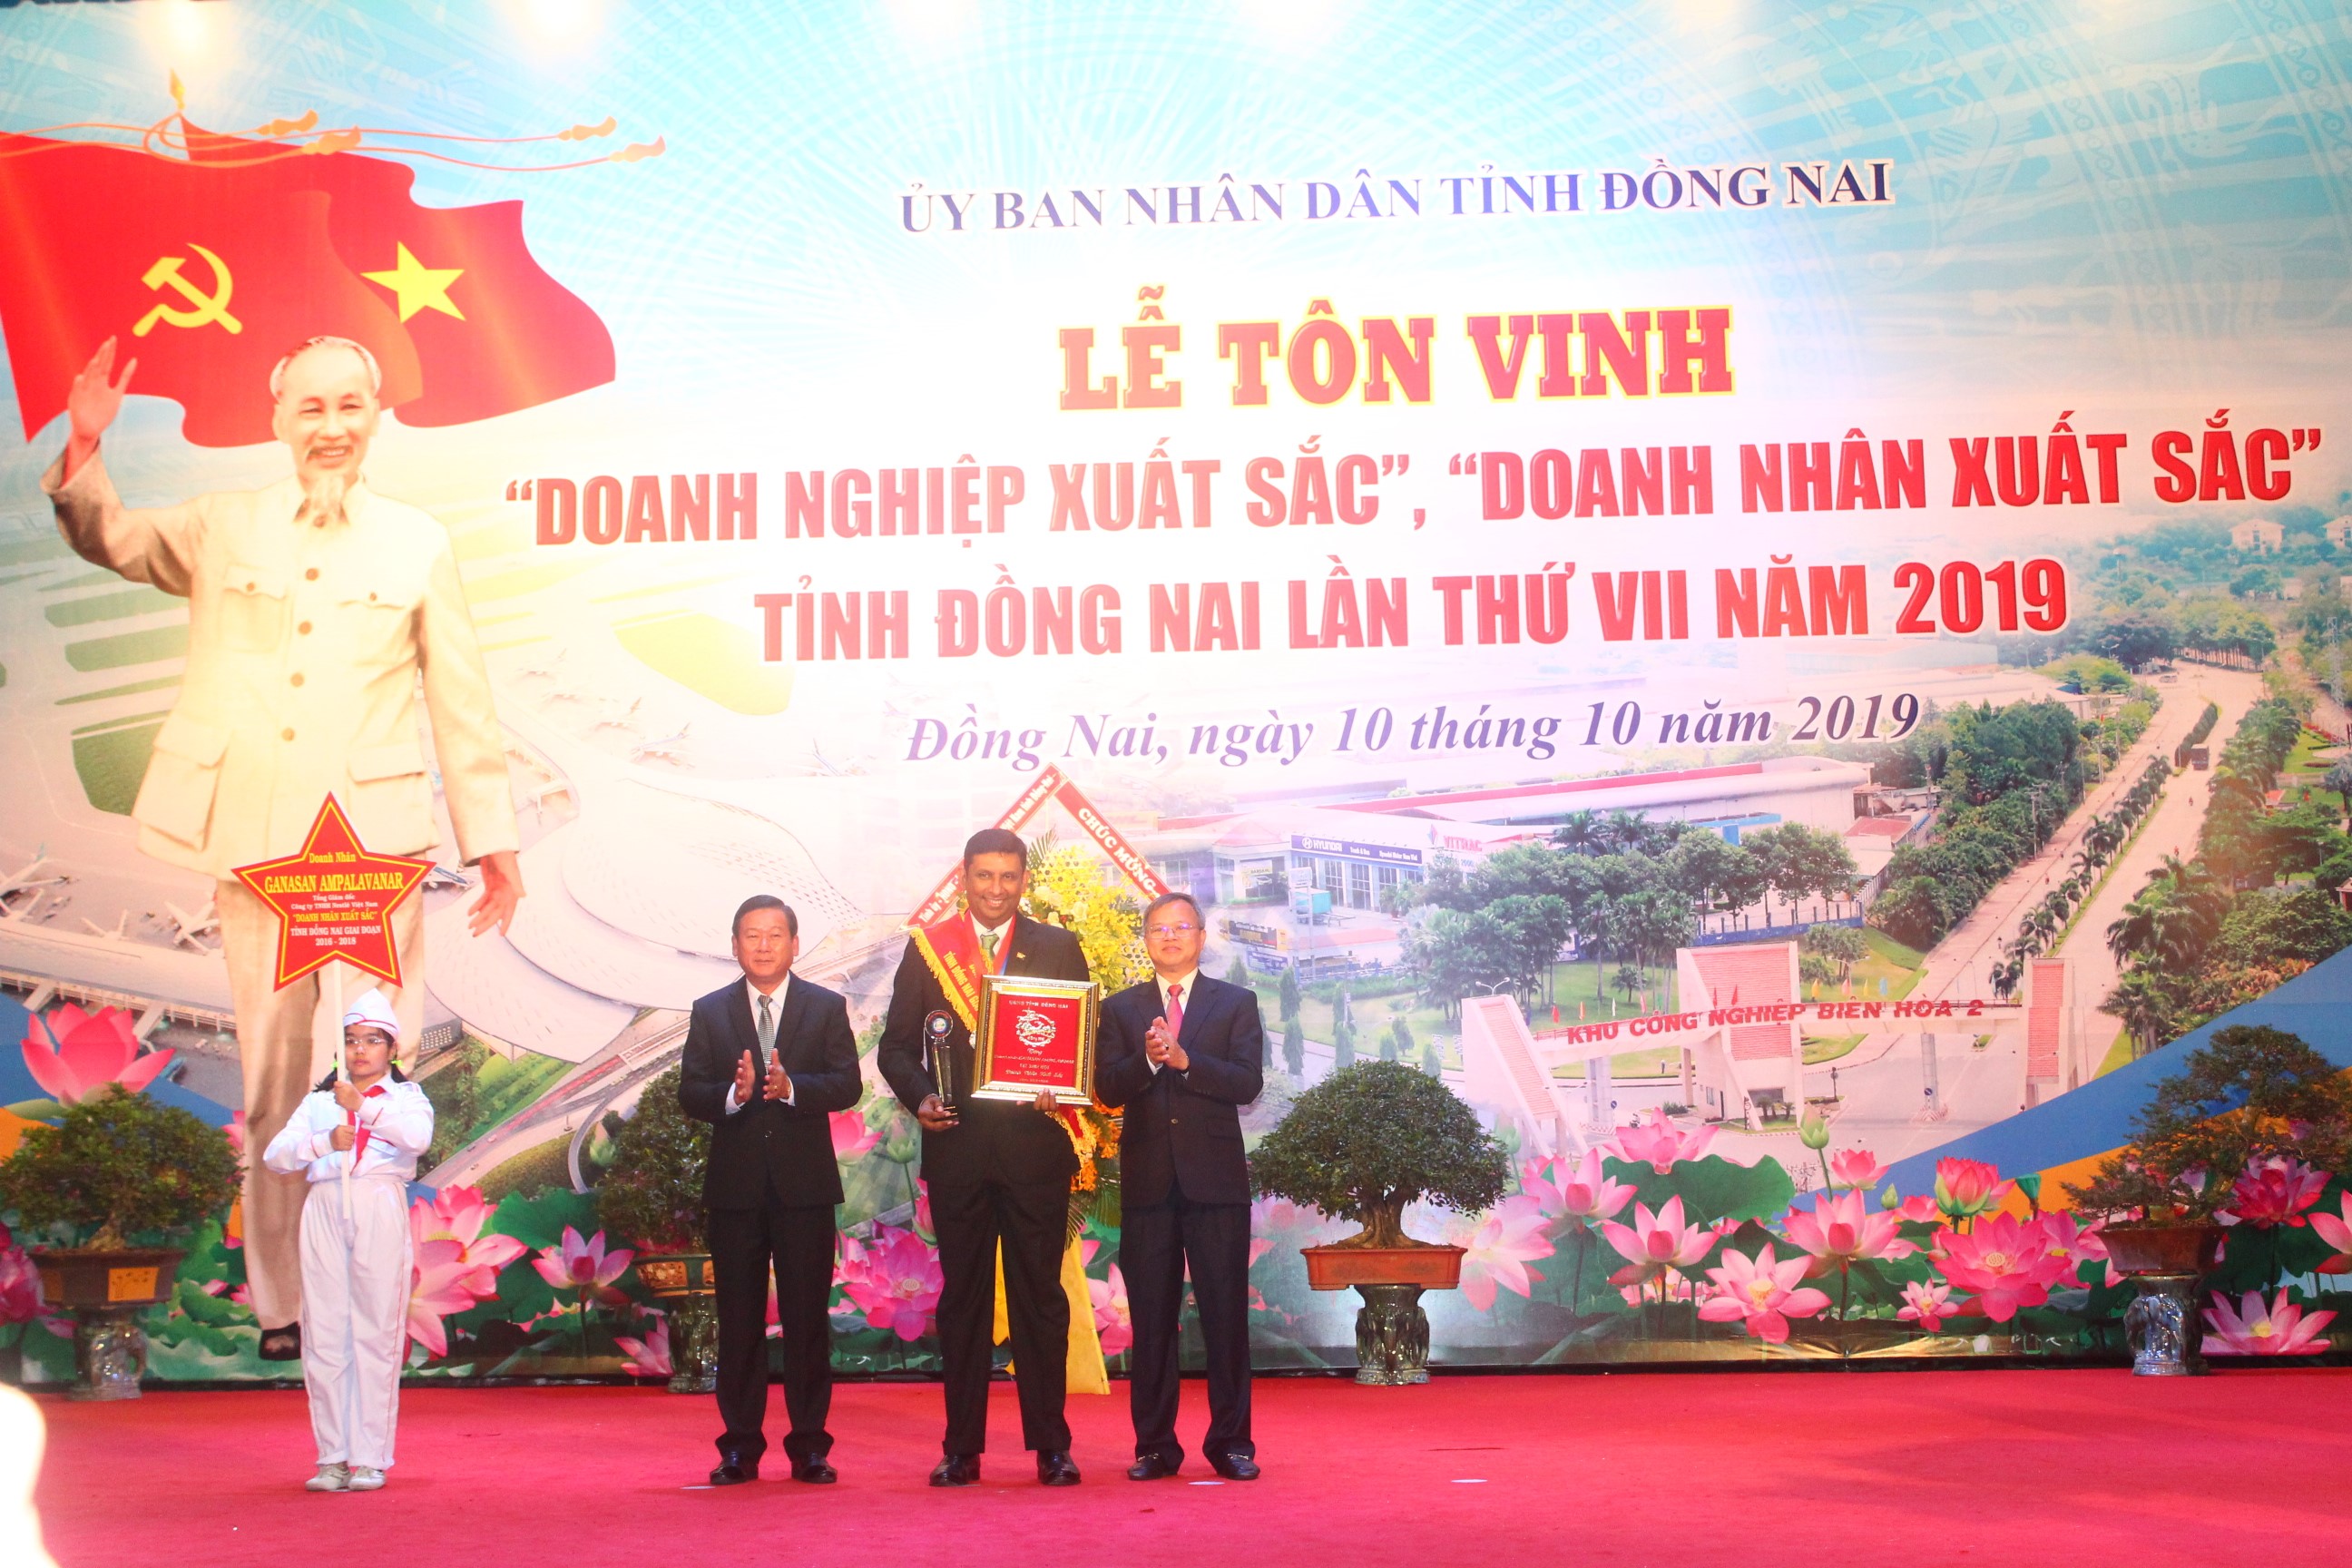 Đồng Nai vinh danh Nestlé Việt Nam - Doanh nghiệp xuất sắc của tỉnh